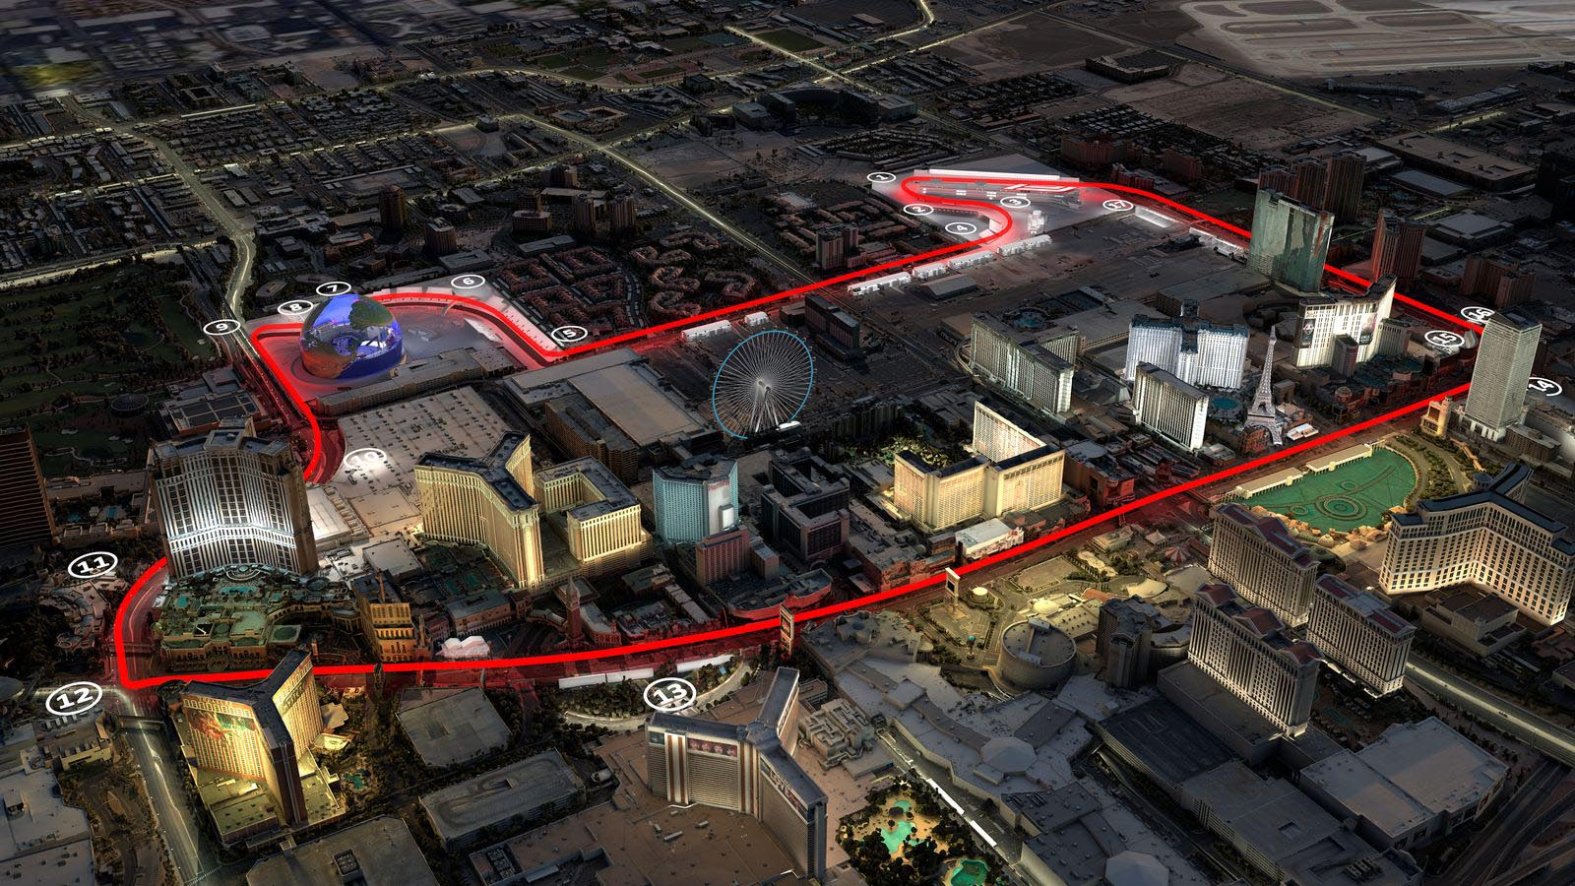 Las Vegas Grand Prix Preview, schedule, details for F1 race NBC